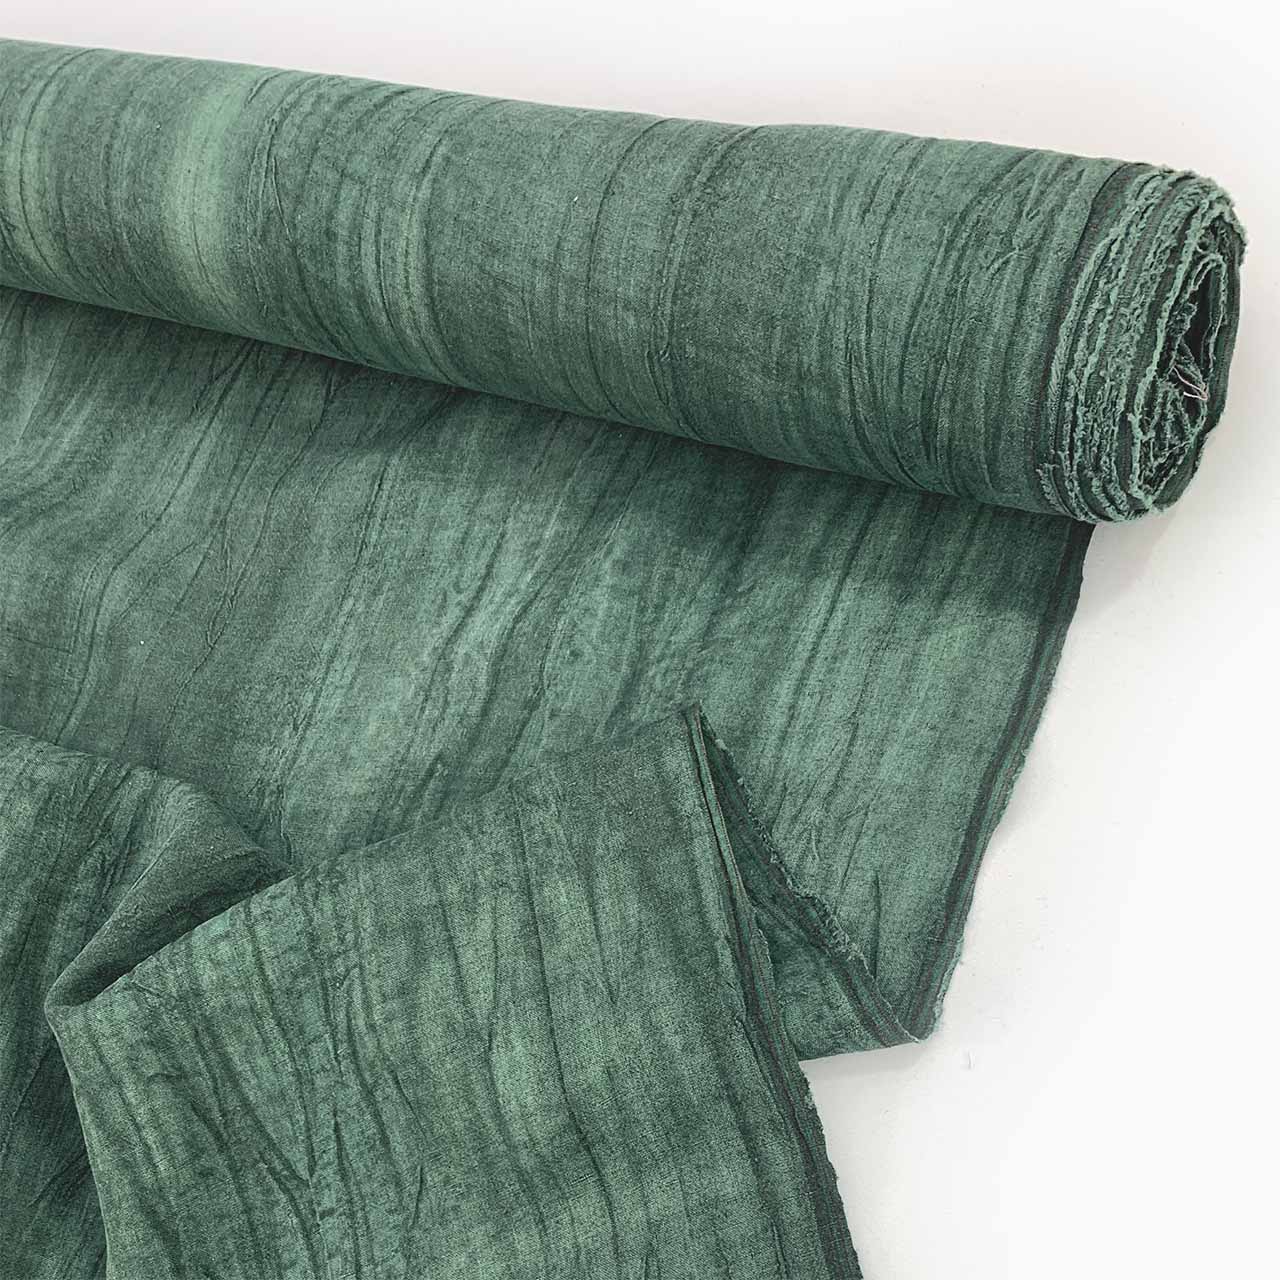 pinen green textured linen crinkle linen - Fabric Collection